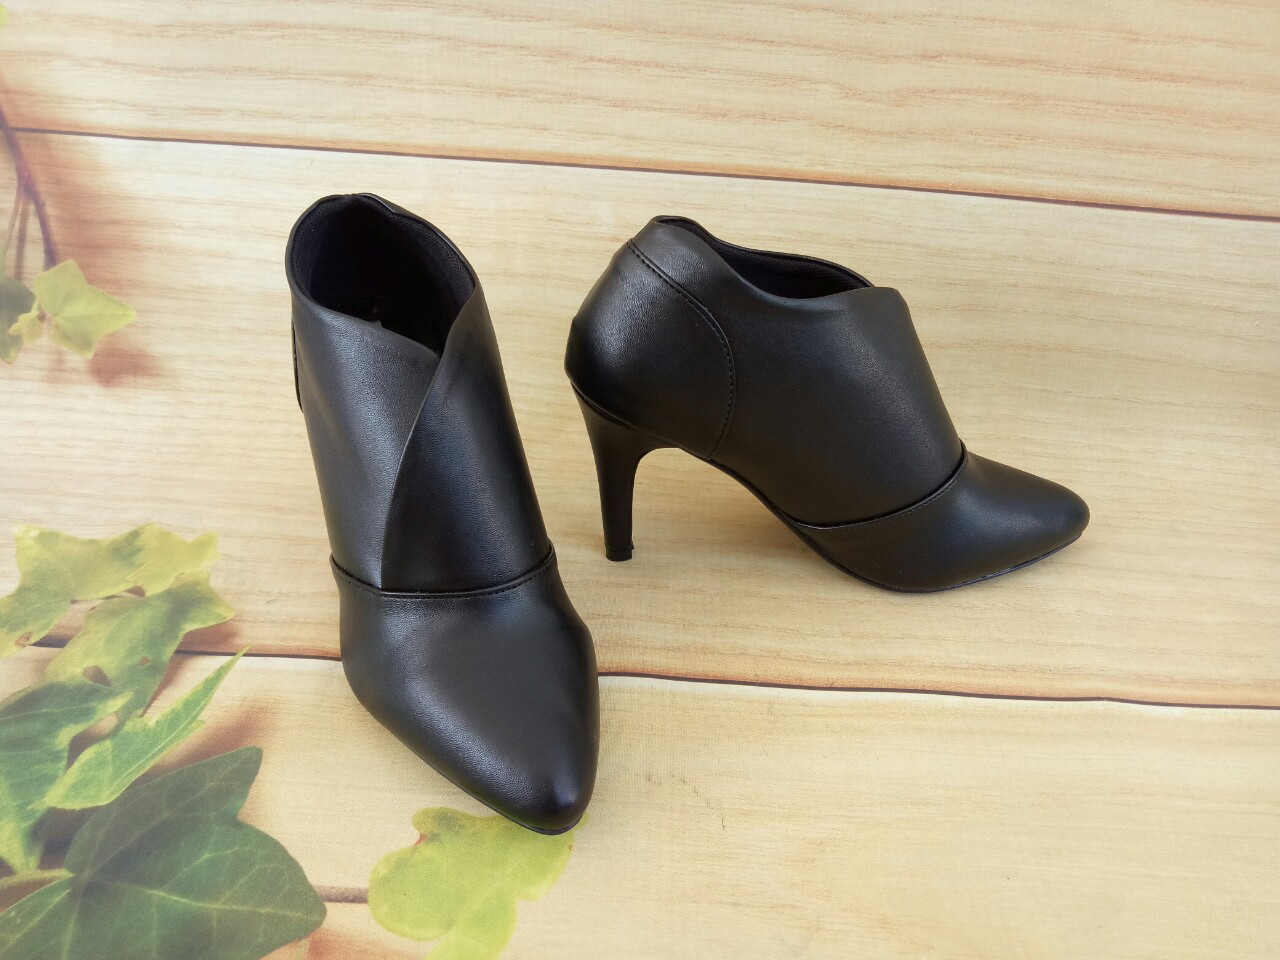 Giày boots nữ cổ thấp 7p hàng hiệu rosata đẹp màu đen thời trang ro35